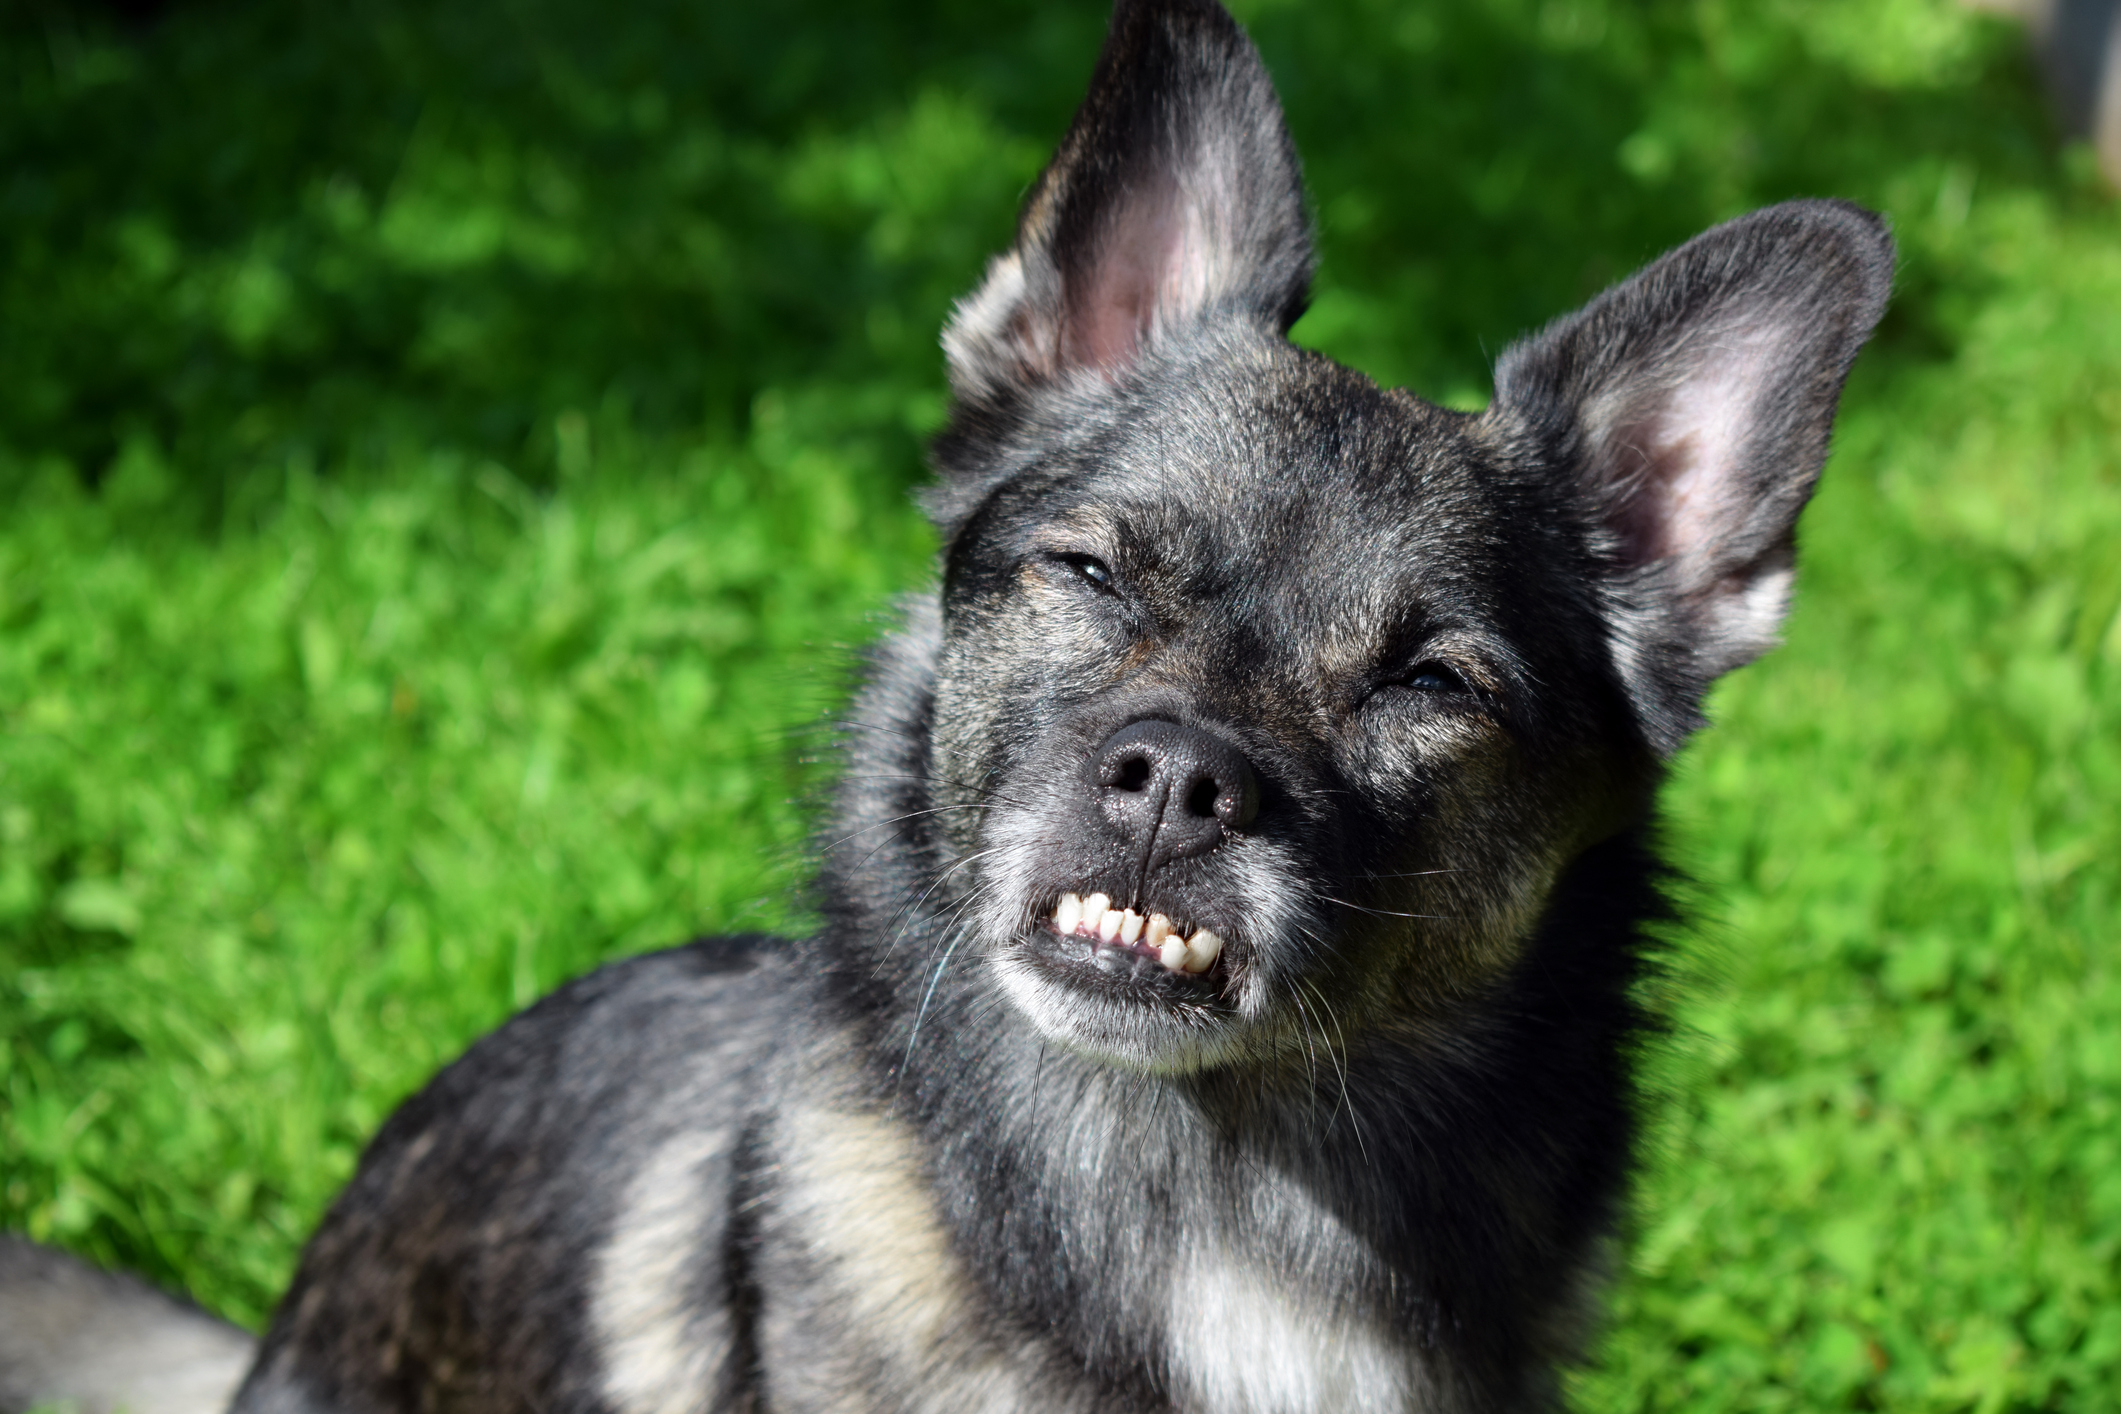  Aparatul dentar pentru câini: când este recomandat? cât costă? cum se întreține? află totul!